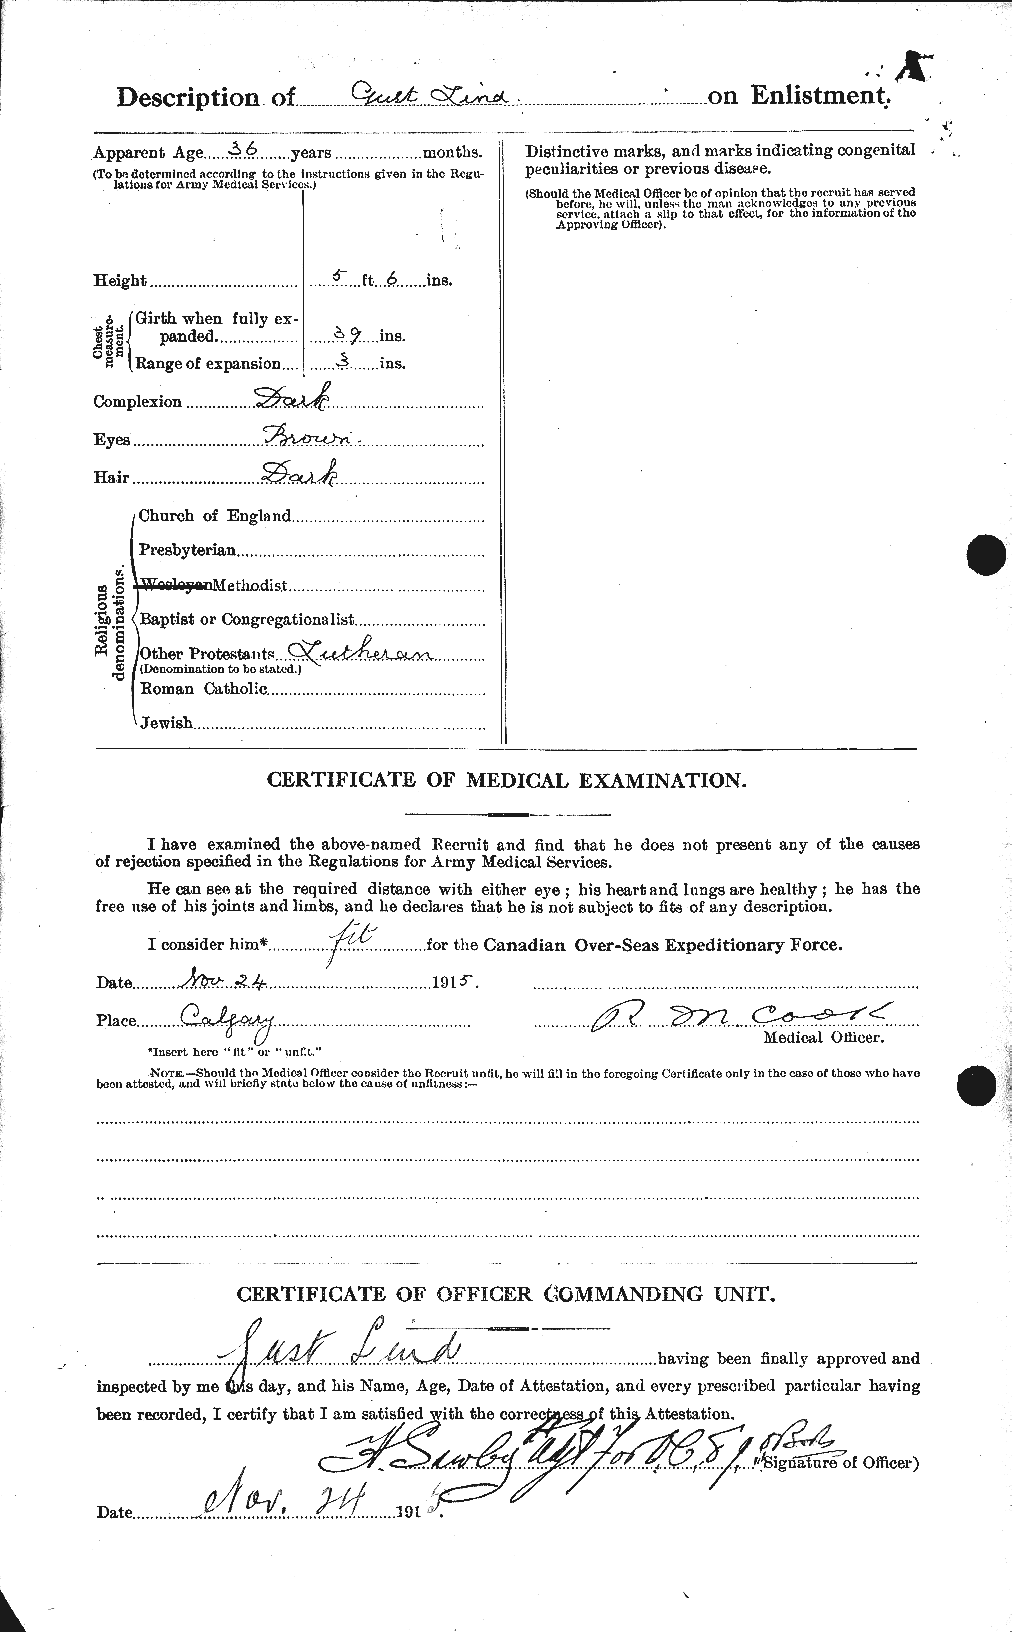 Dossiers du Personnel de la Première Guerre mondiale - CEC 467622b